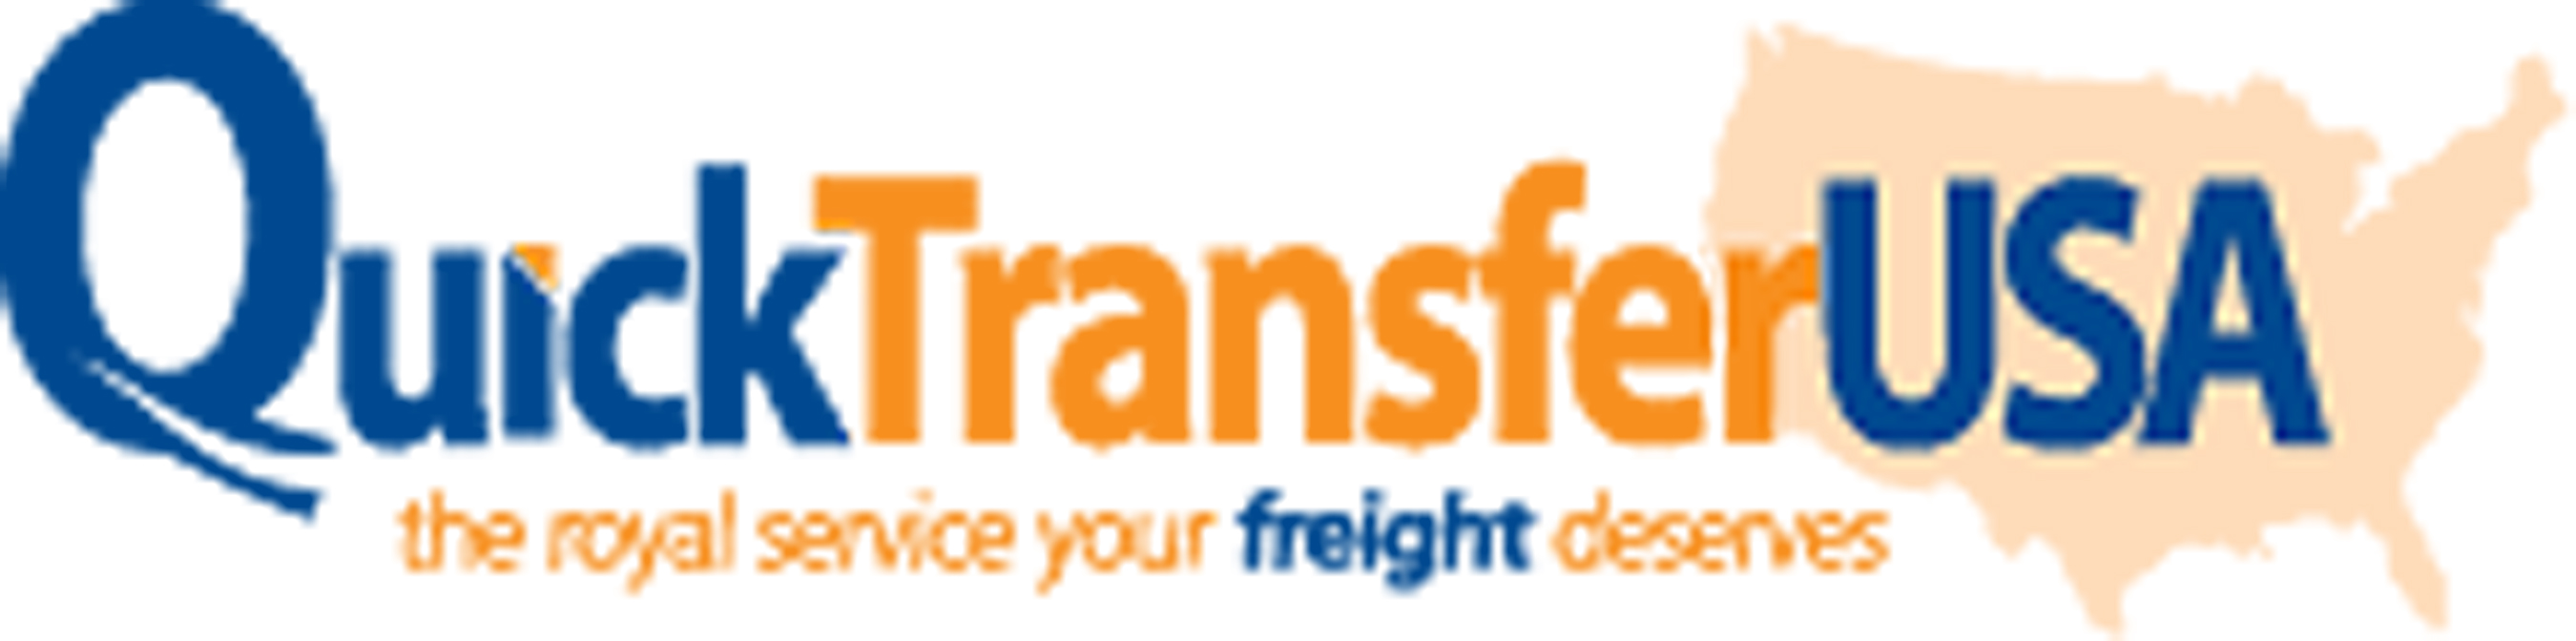 http://pressreleaseheadlines.com/wp-content/Cimy_User_Extra_Fields/Quick Transfer USA/Quick-Transfer-USA-Logo.jpg